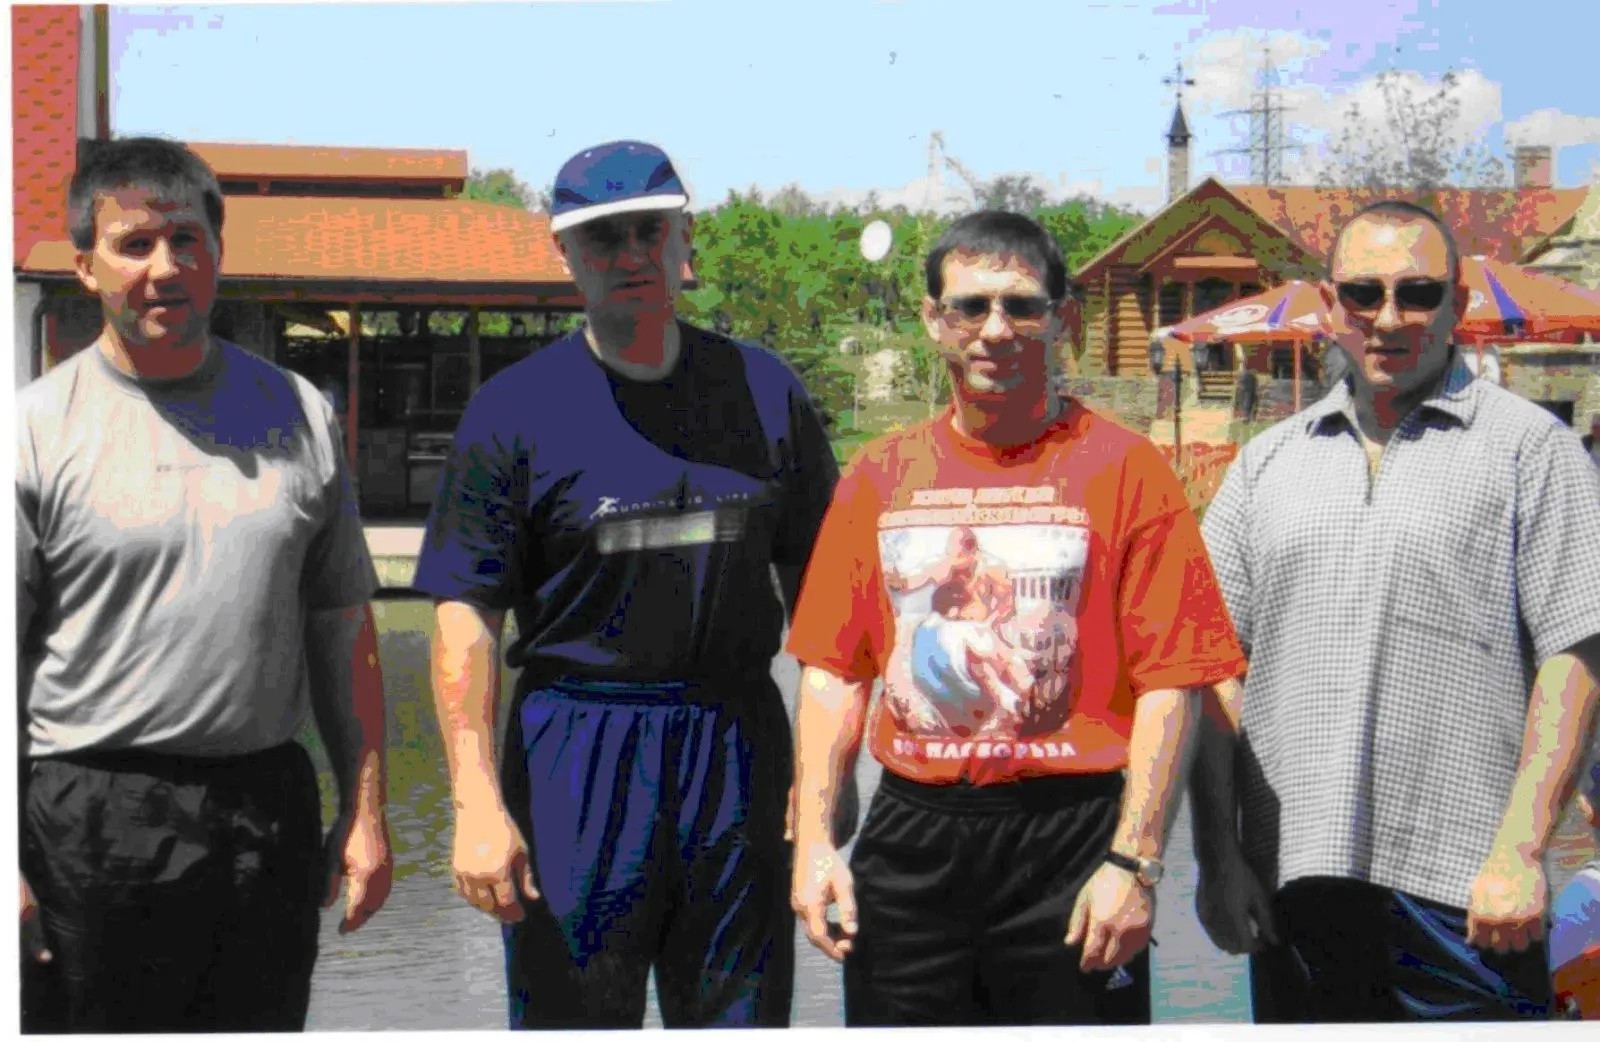 Второй слева — Данильченко, третий — Кожухов. Фото: Международное агентство информационных расследований